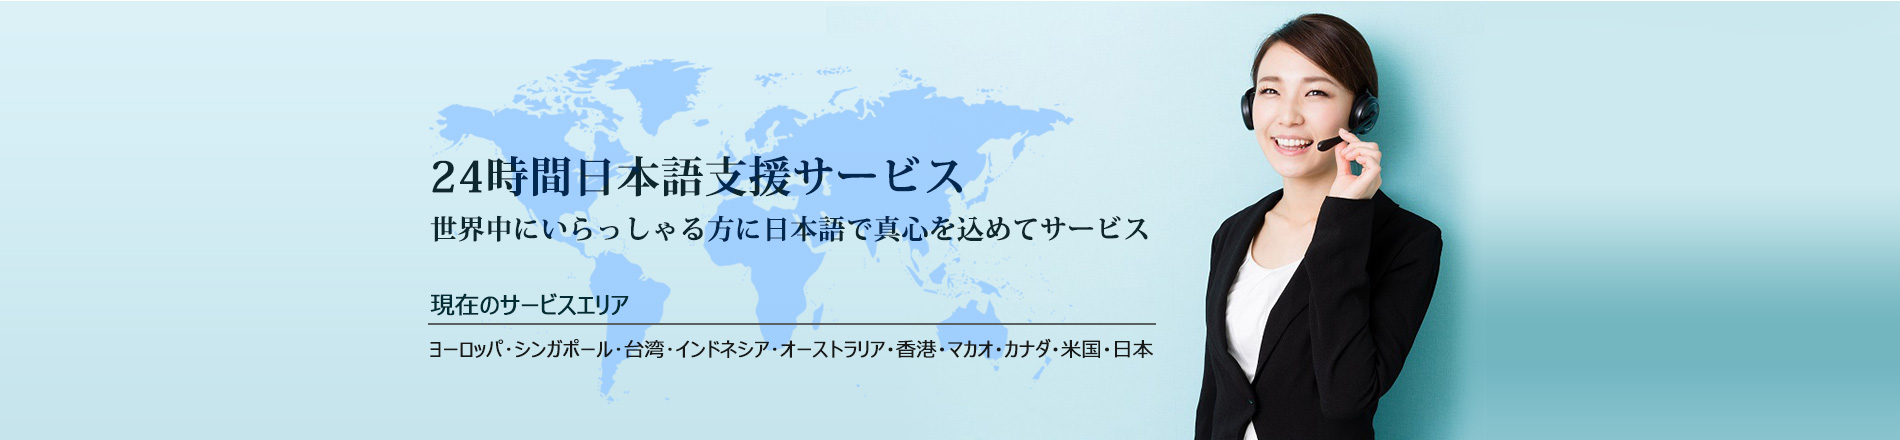 24時間日本語支援サービス 世界中にいらっしゃる方に日本語でまごころを込めてサービス